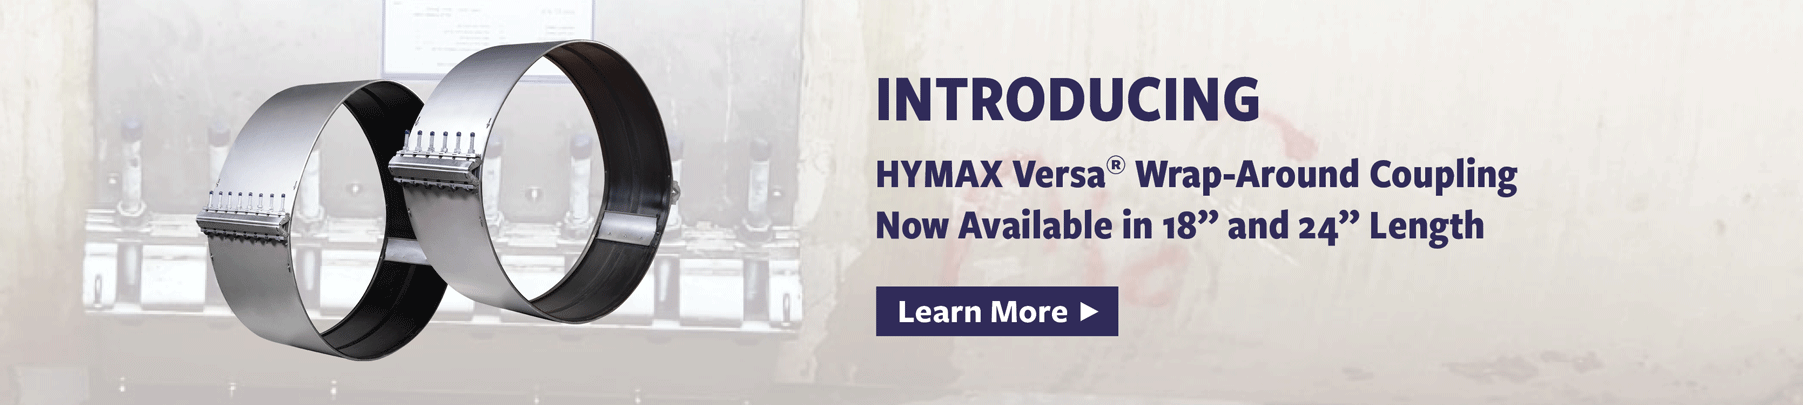 HYMAX Versa 